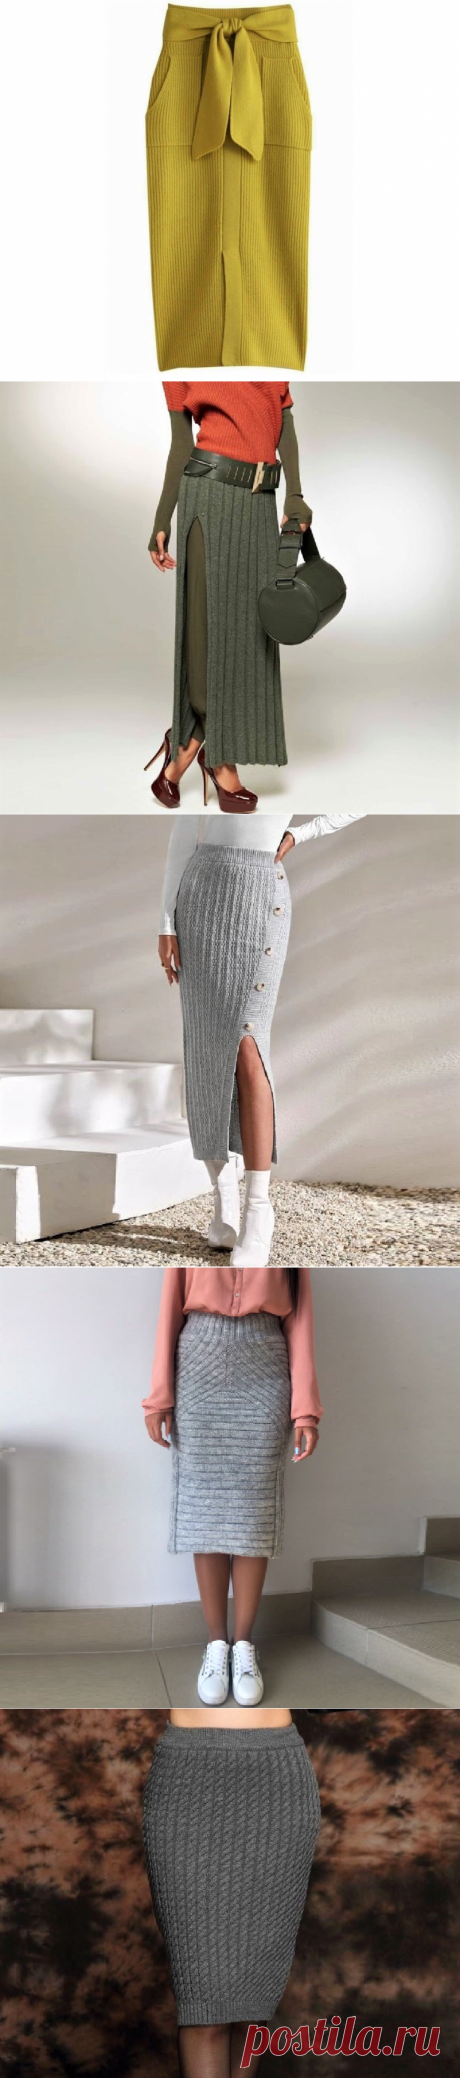 Модные, стильные и просто красивые! Подборка вязаных юбок для любого возраста (30 идей) | Идеи рукоделия | Дзен